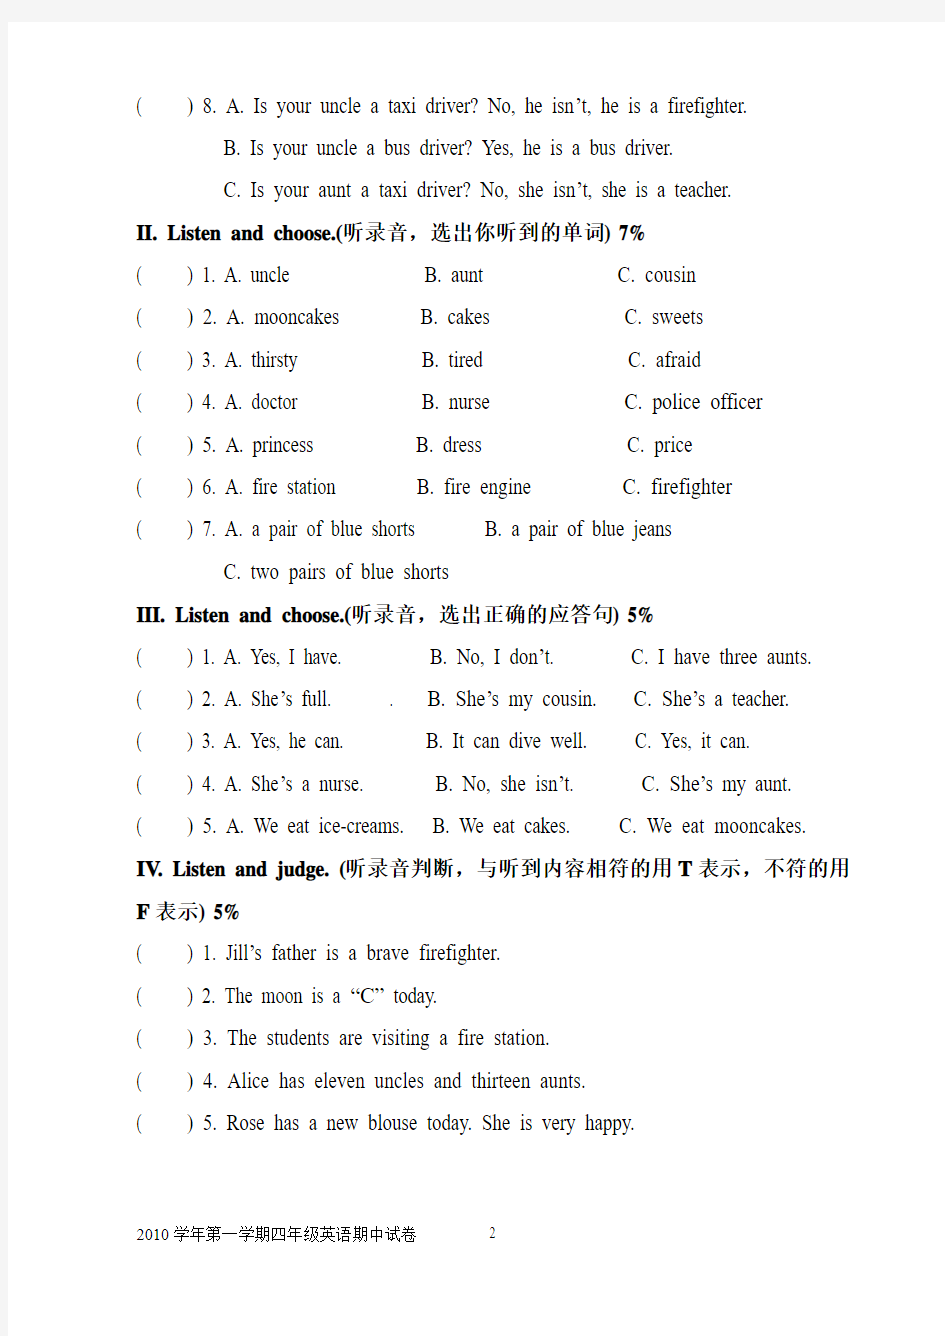 上海牛津英语四年级4A期中测试题